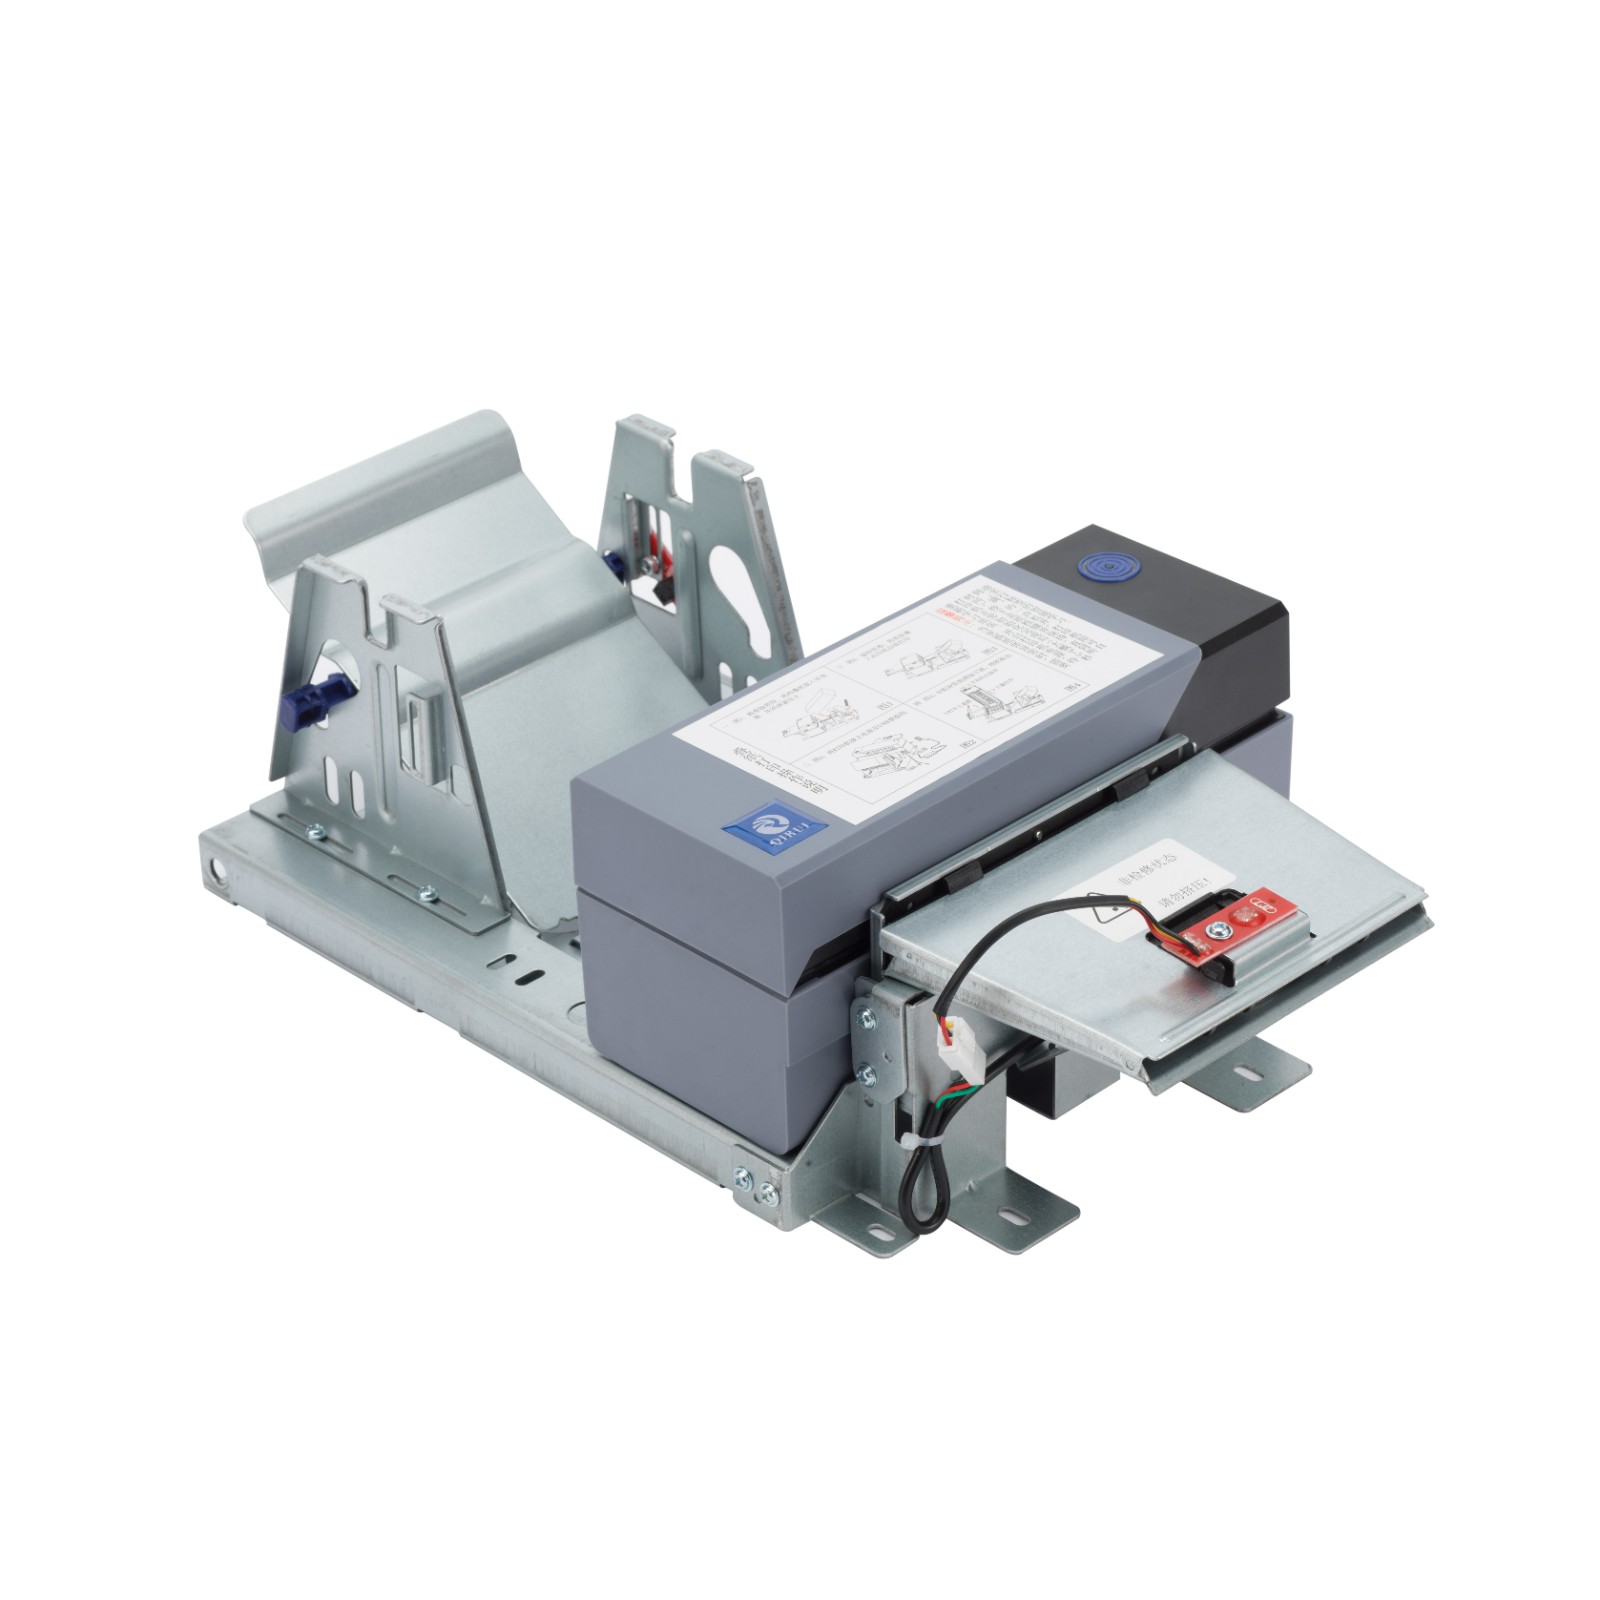 Impressora de etiquetas para quiosque embutida de 4 polegadas com cortador automático
